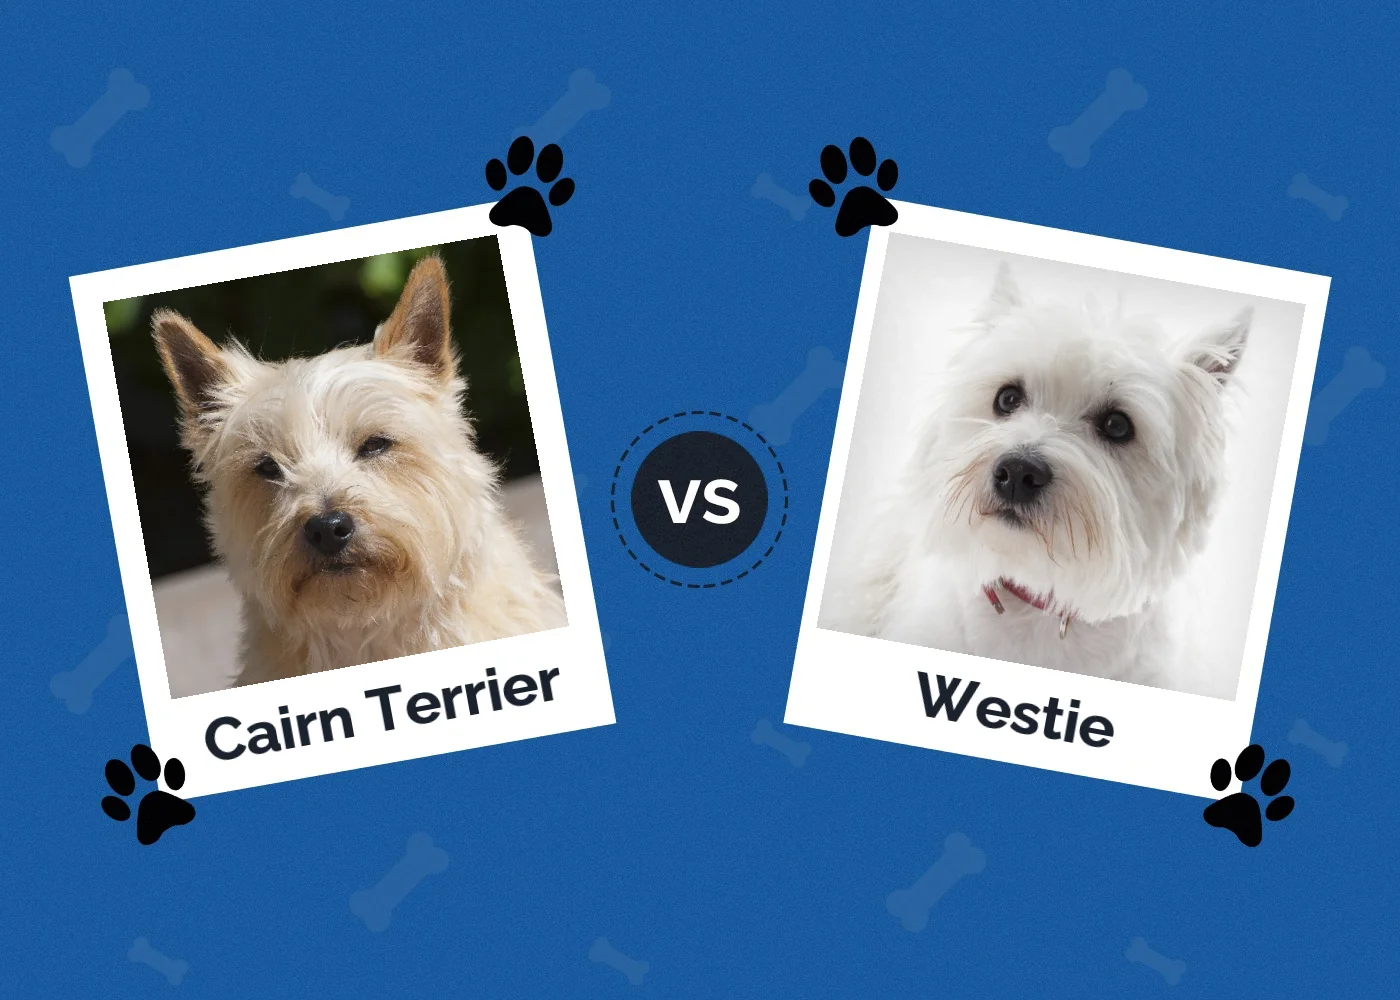 Cairn Terrier vs Westie - Featured Image